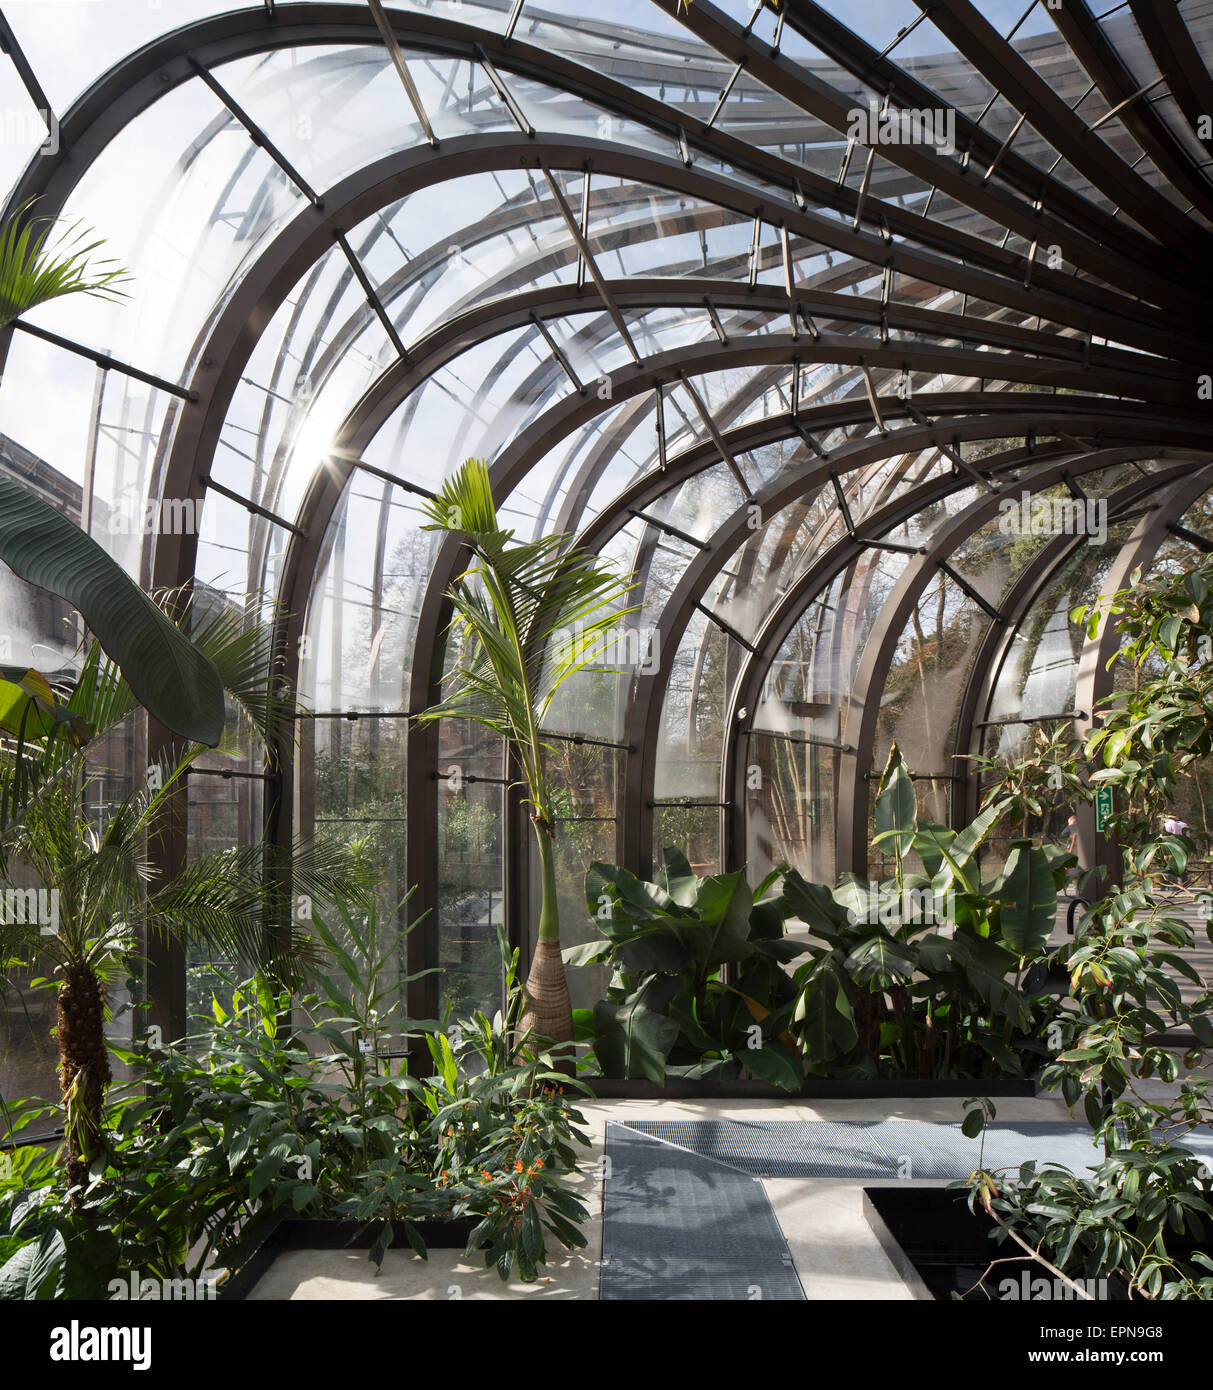 Blick auf Glashaus sitzt. Bombay Sapphire Brennerei, Laverstoke, Vereinigtes Königreich. Architekt: Heatherwick Studio, 2014. Stockfoto